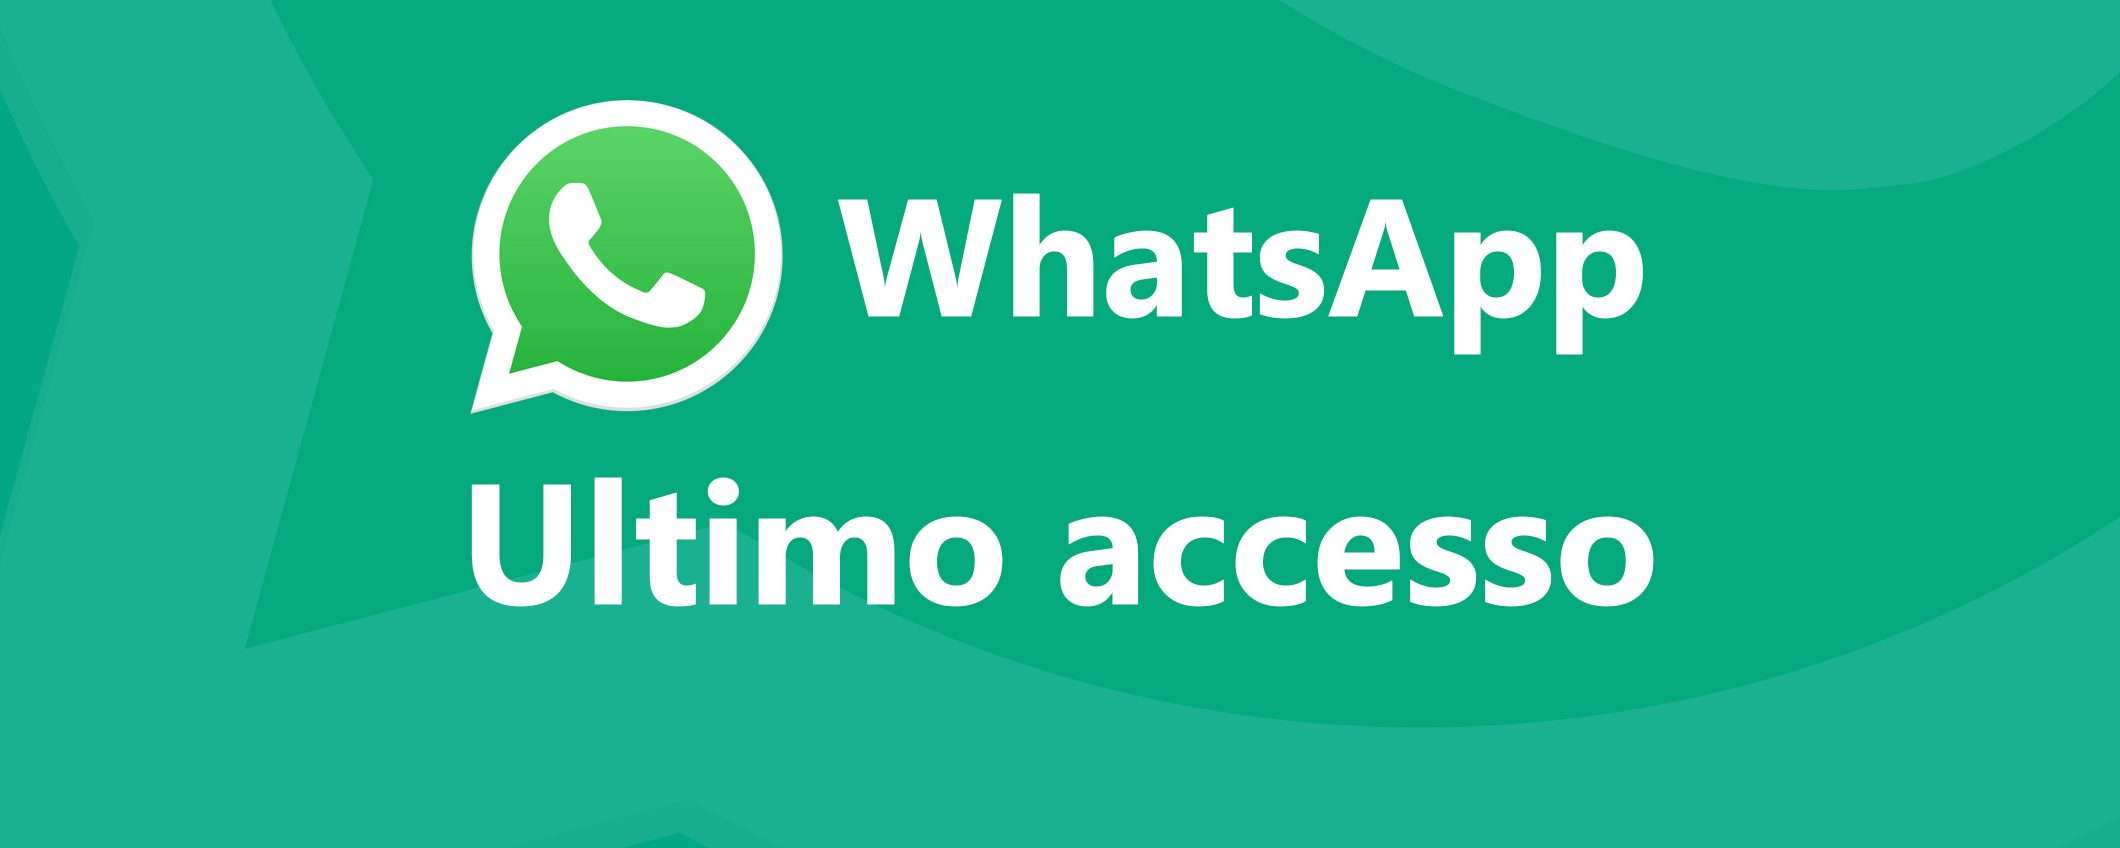 WhatsApp: novità importante per l'ultimo accesso